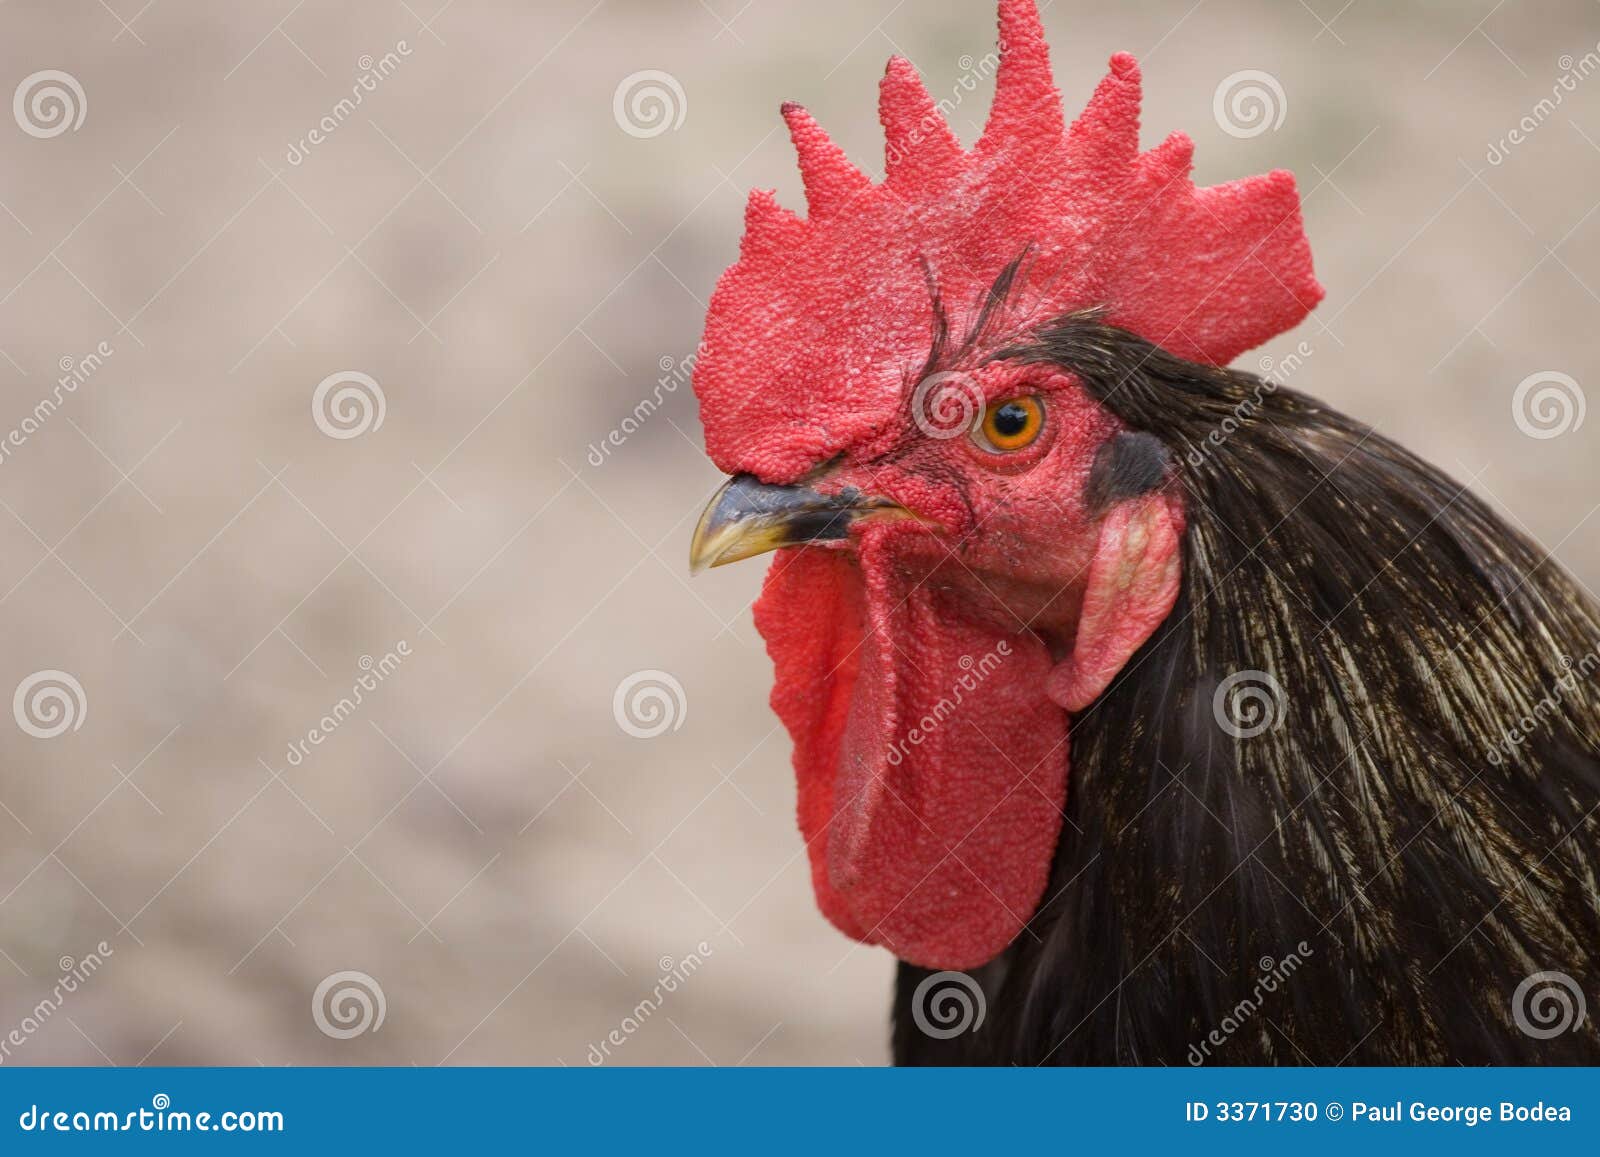 rooster-3371730.jpg